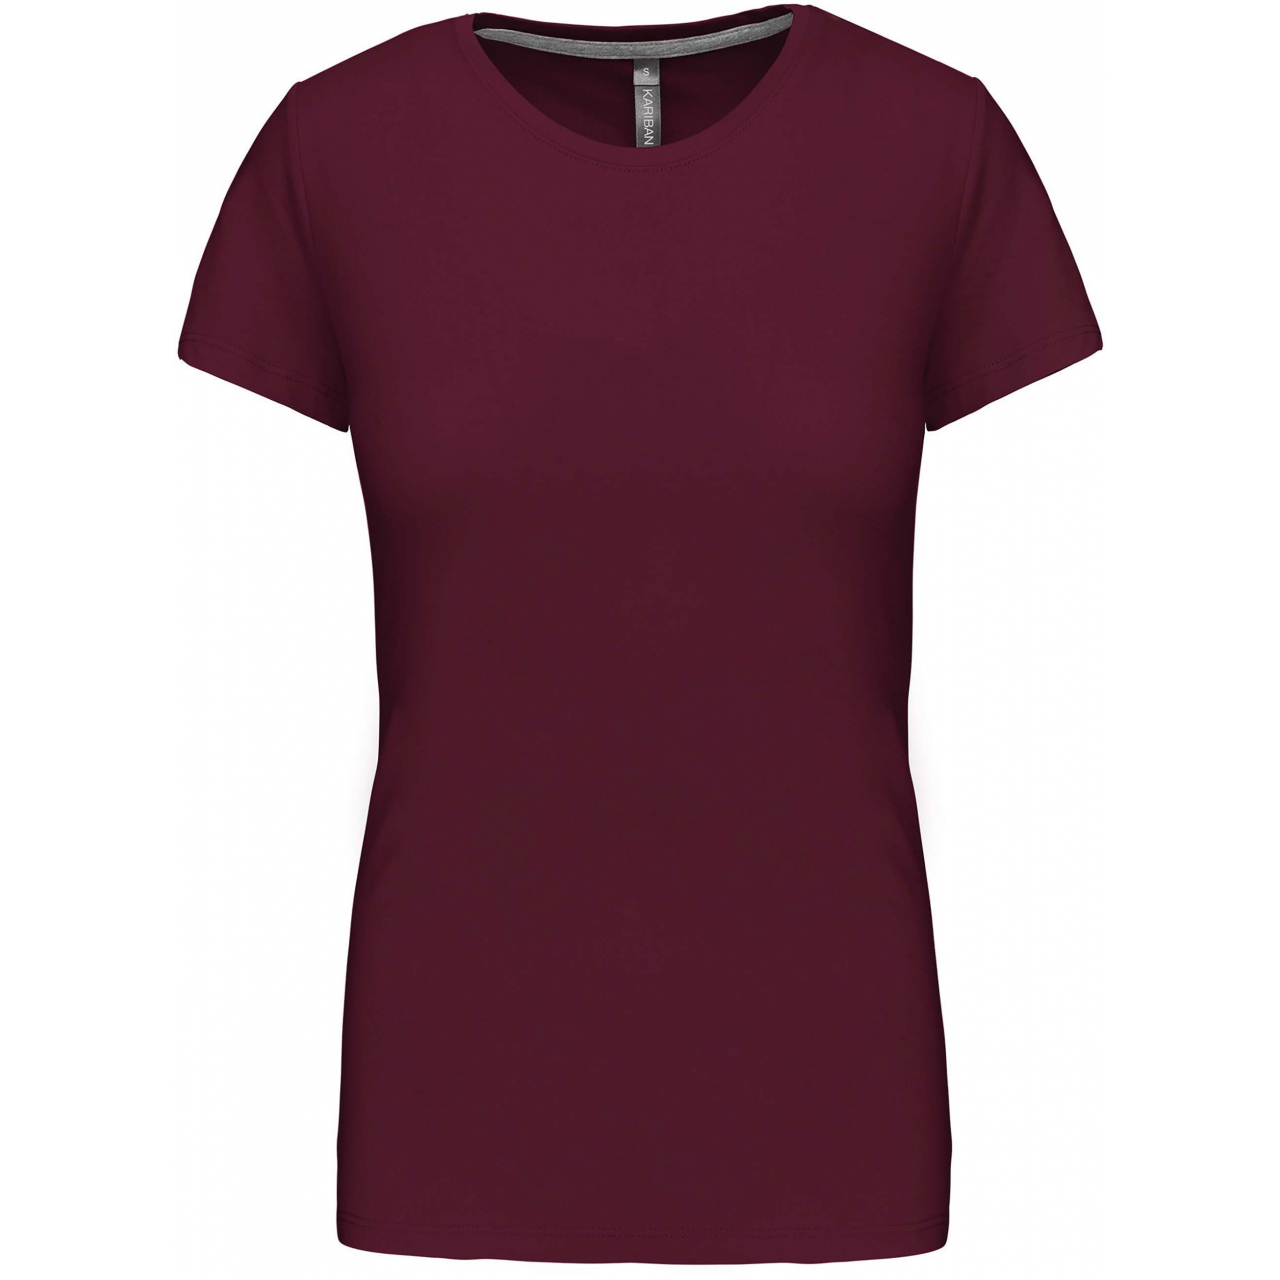 Dámské tričko Kariban s krátkým rukávem - vínové, XL